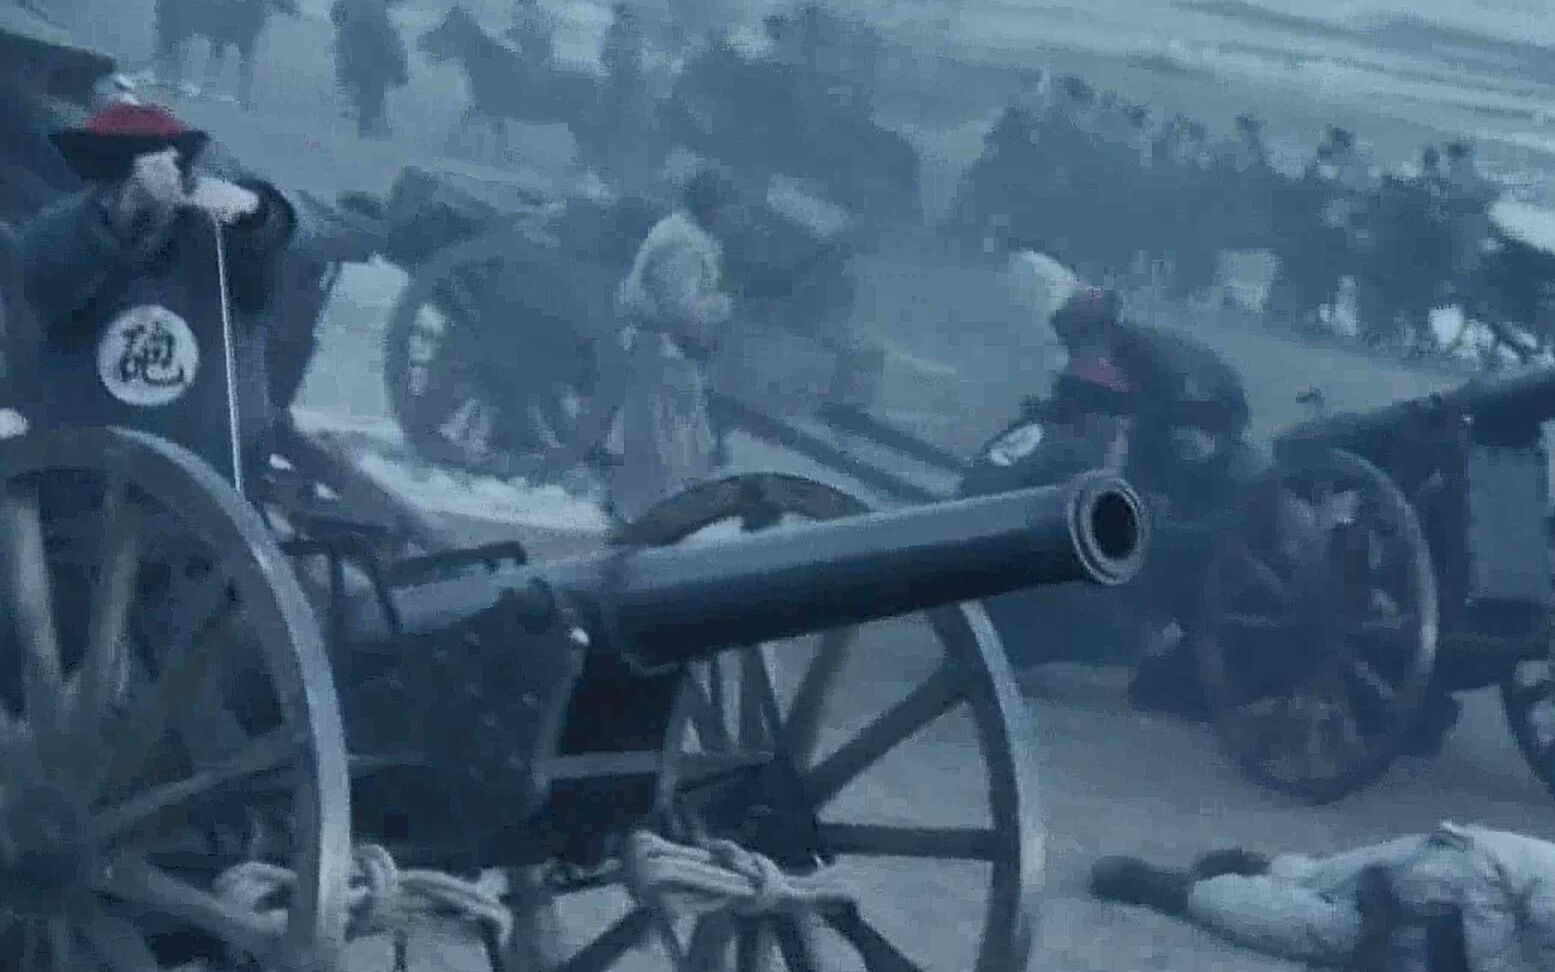 日本影视作品中的中国形象第1期 甲午战争的清军与日本军的交锋